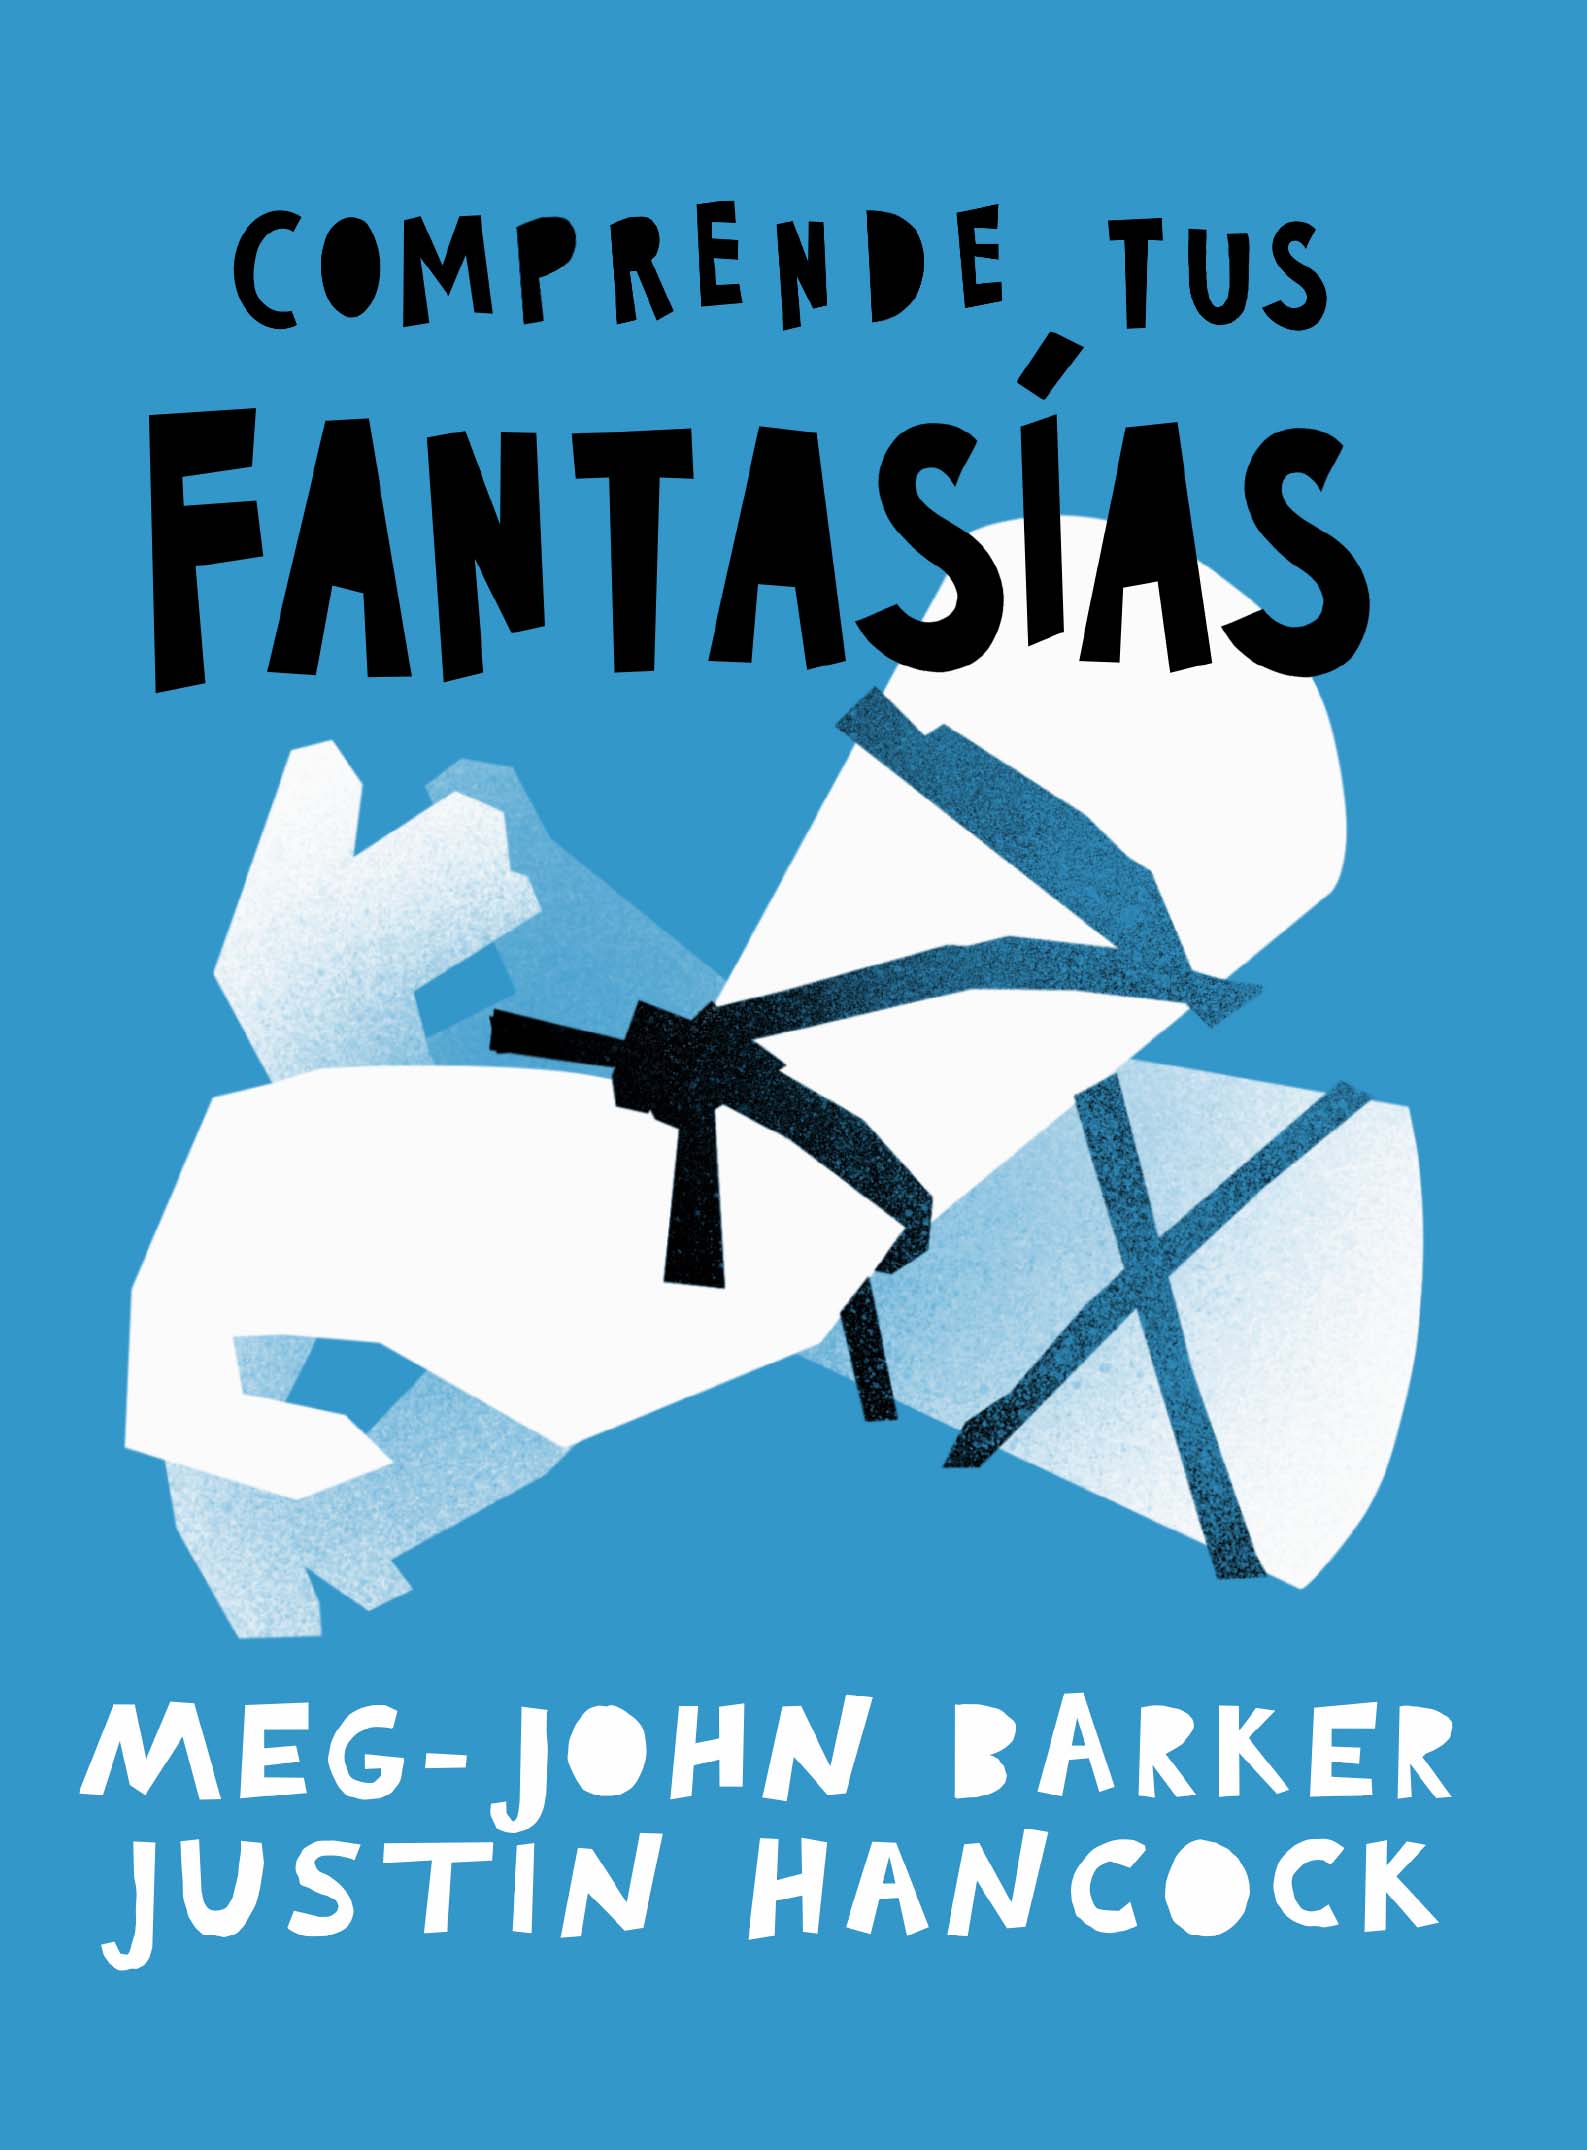 "Comprende tus Fantasías" por Justin Hancock y Meg-John Barker